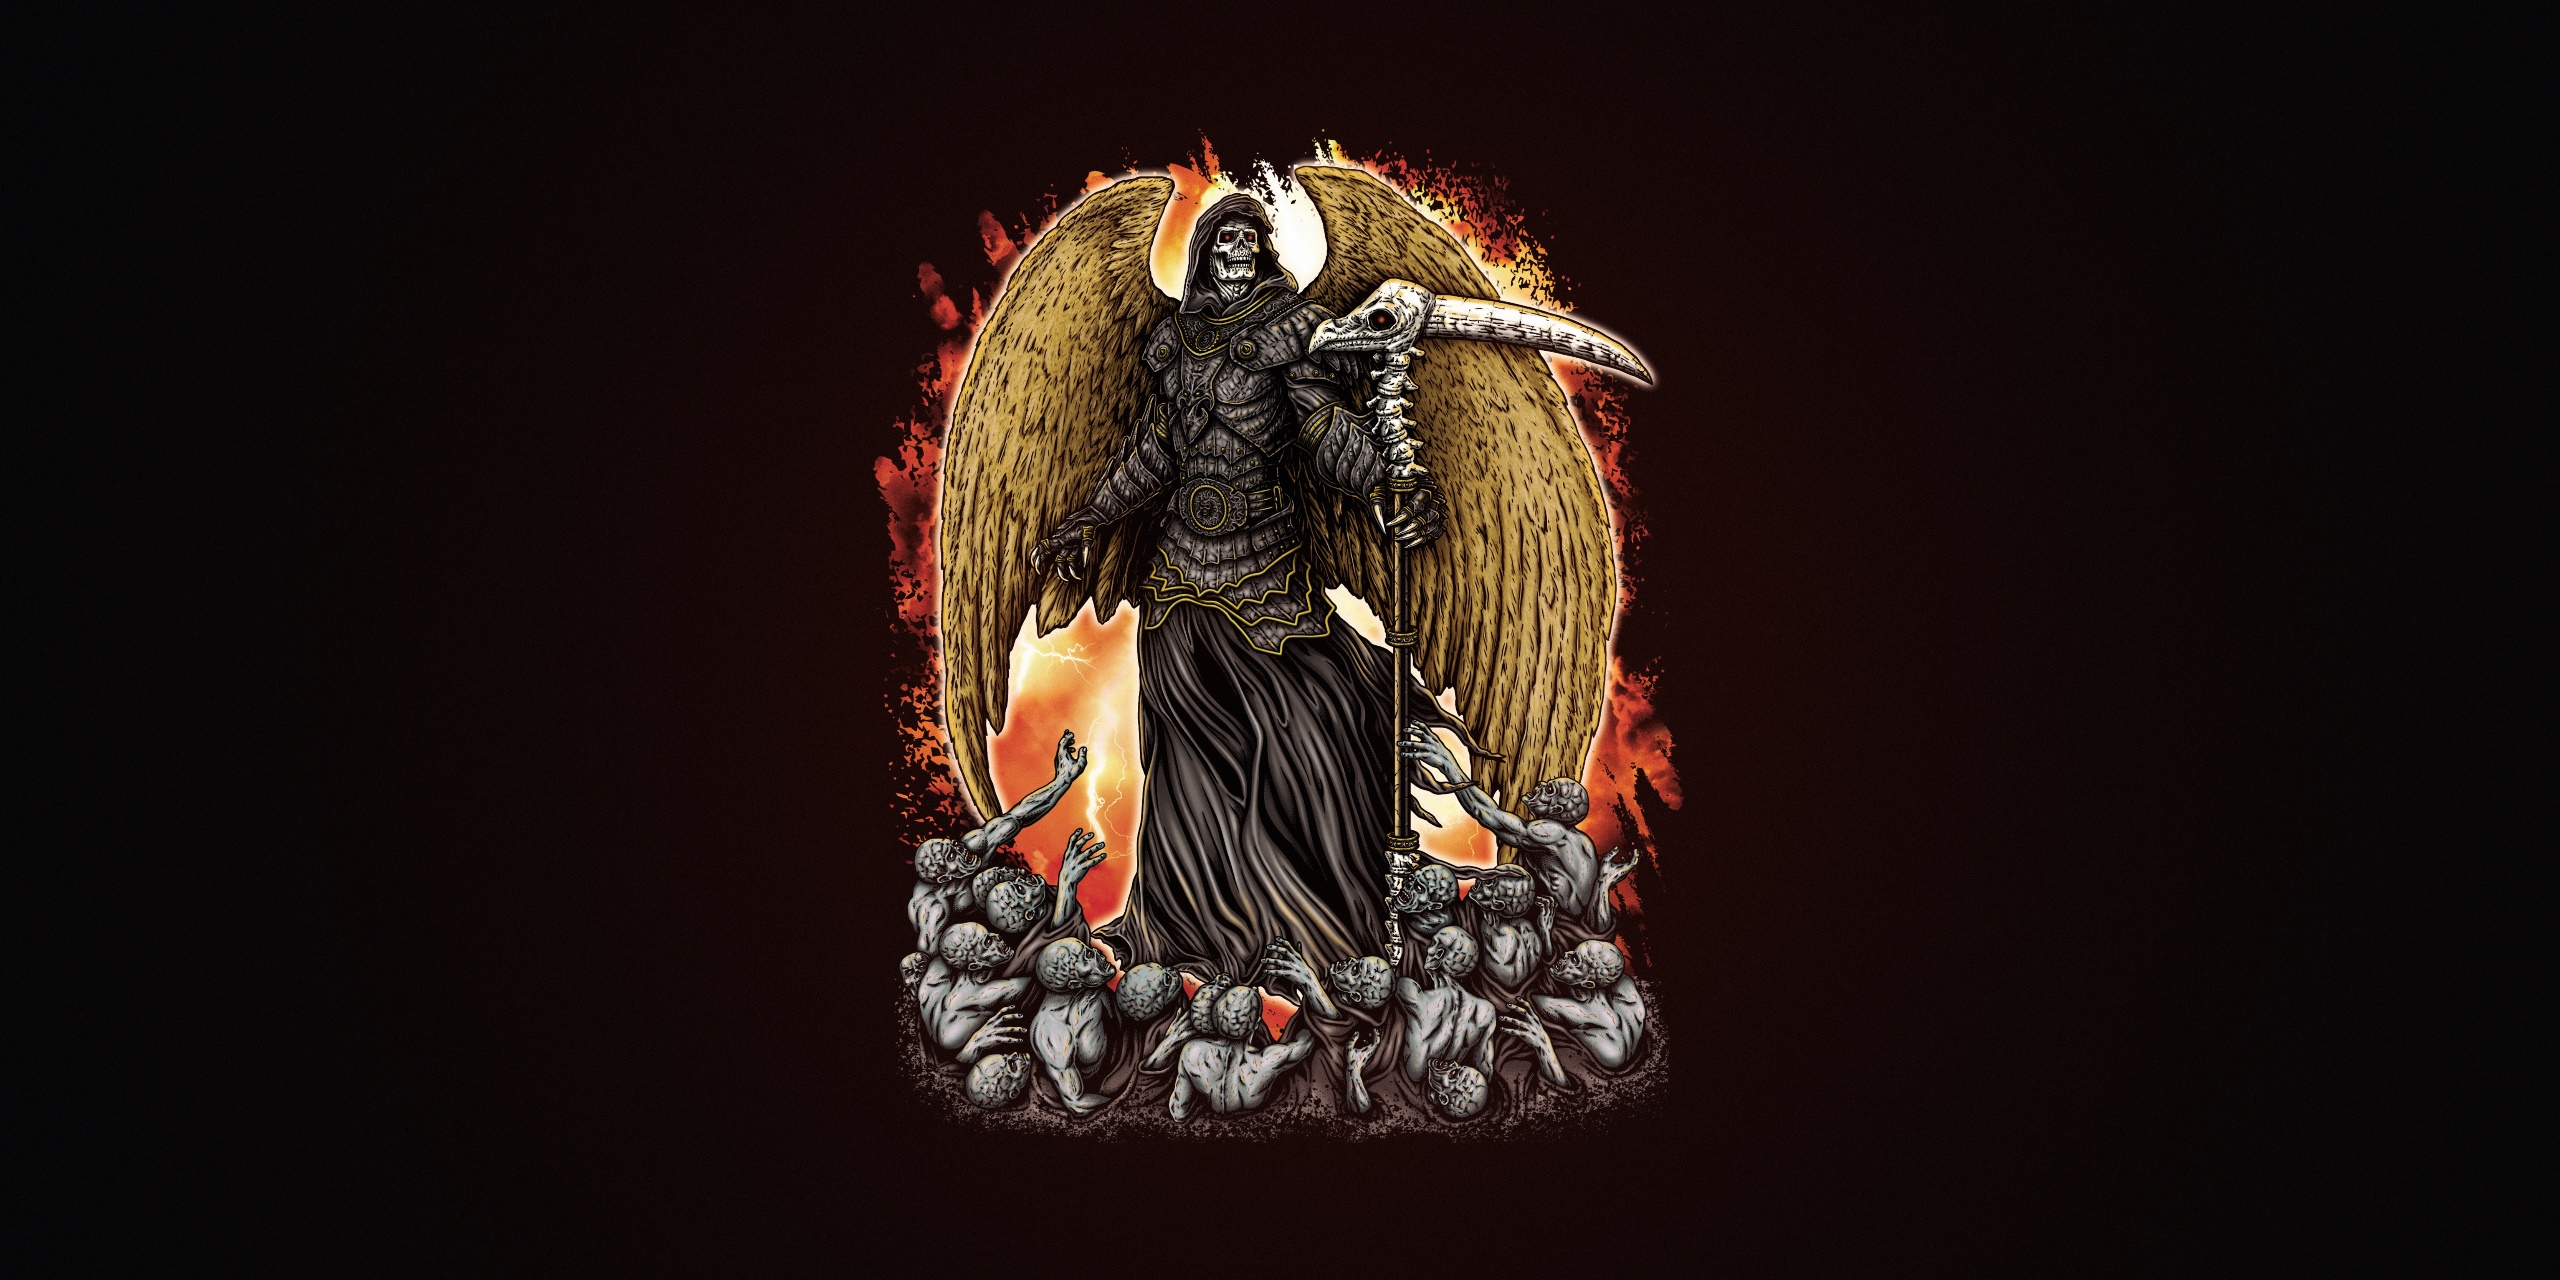 General 2560x1280 Grim Reaper simple background artwork fantasy art